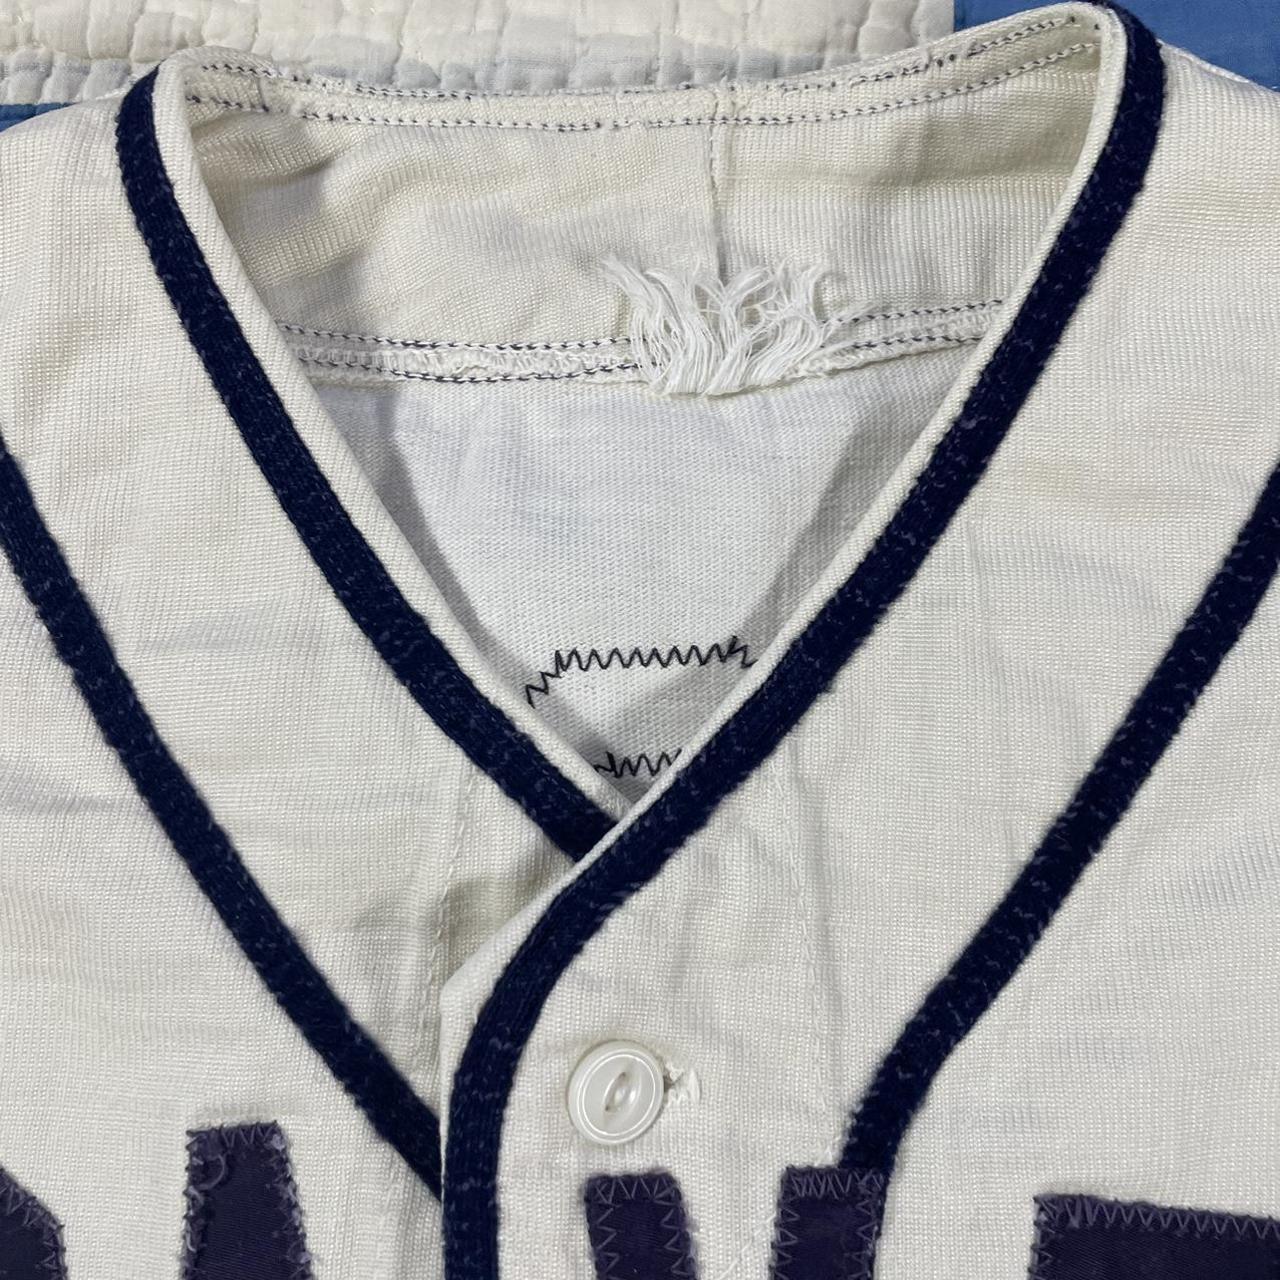 VTG 50s 60s Braves Cotton Baseball Jersey Patch Logo True Vintage